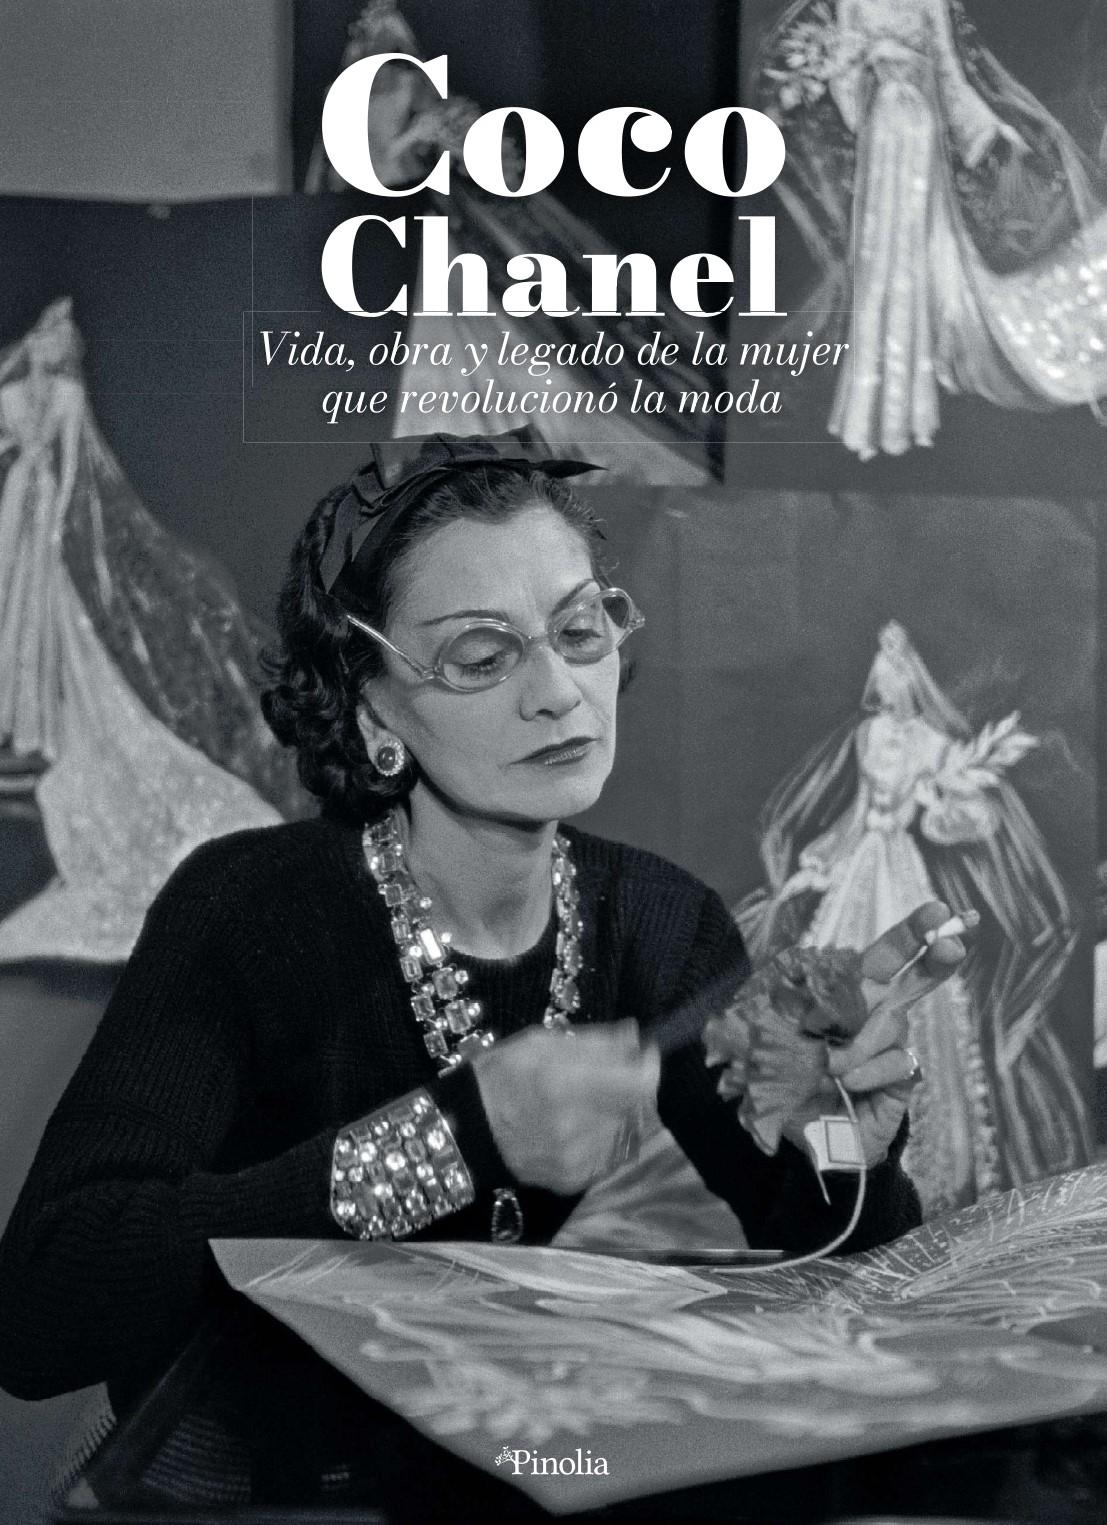 COCO CHANEL "Vida, obra y legado de la mujer que revolucionó la moda"